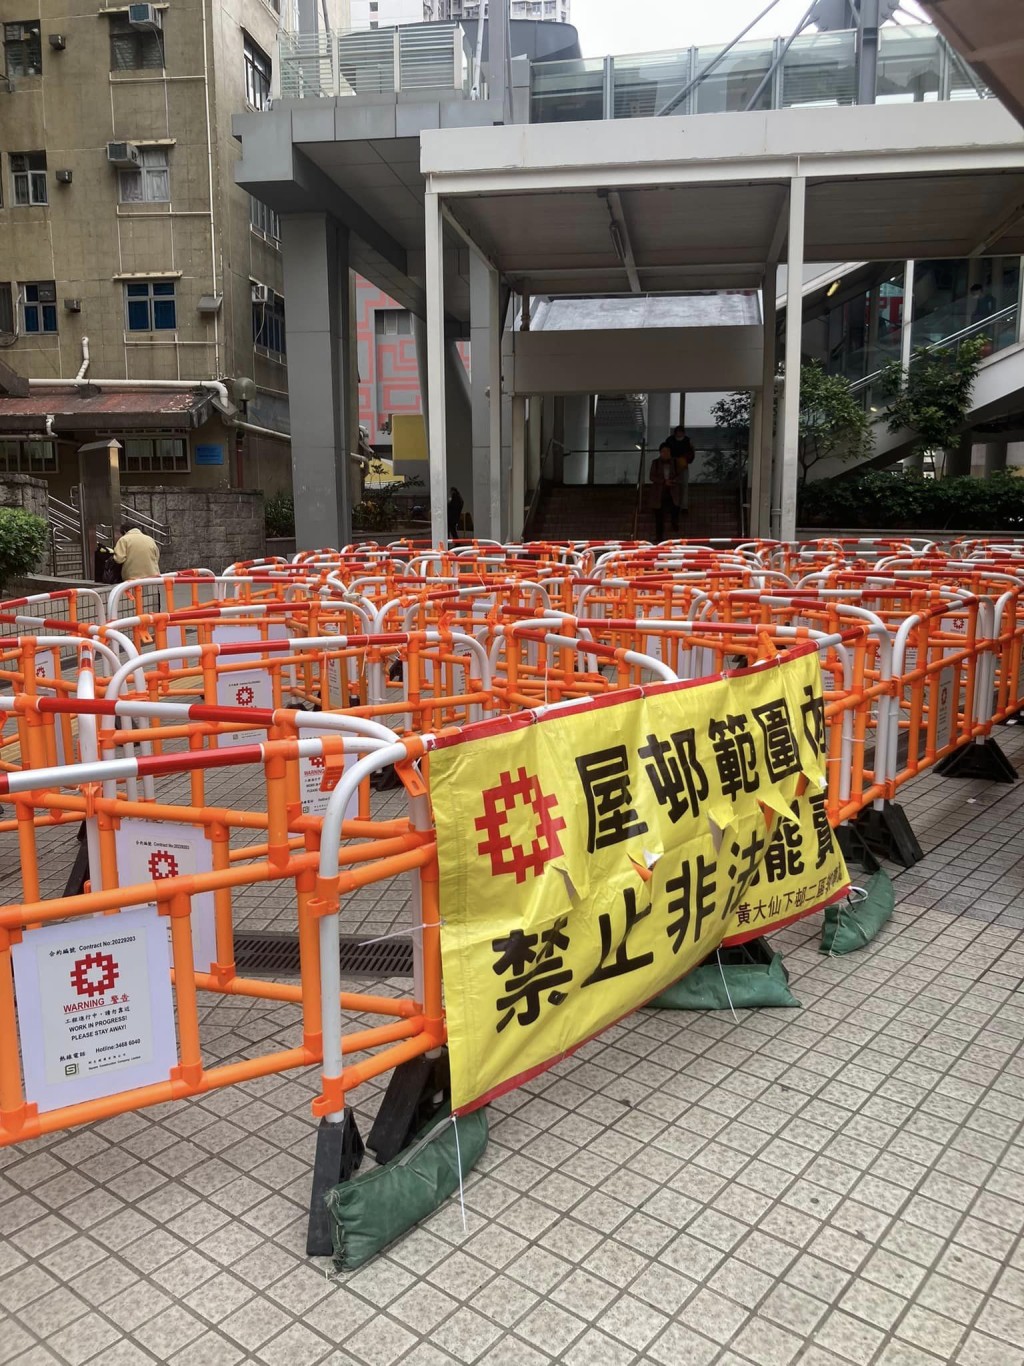 「围栏阵」上挂上「屋邨范围  禁止摆卖」的横额。袁智仁FB